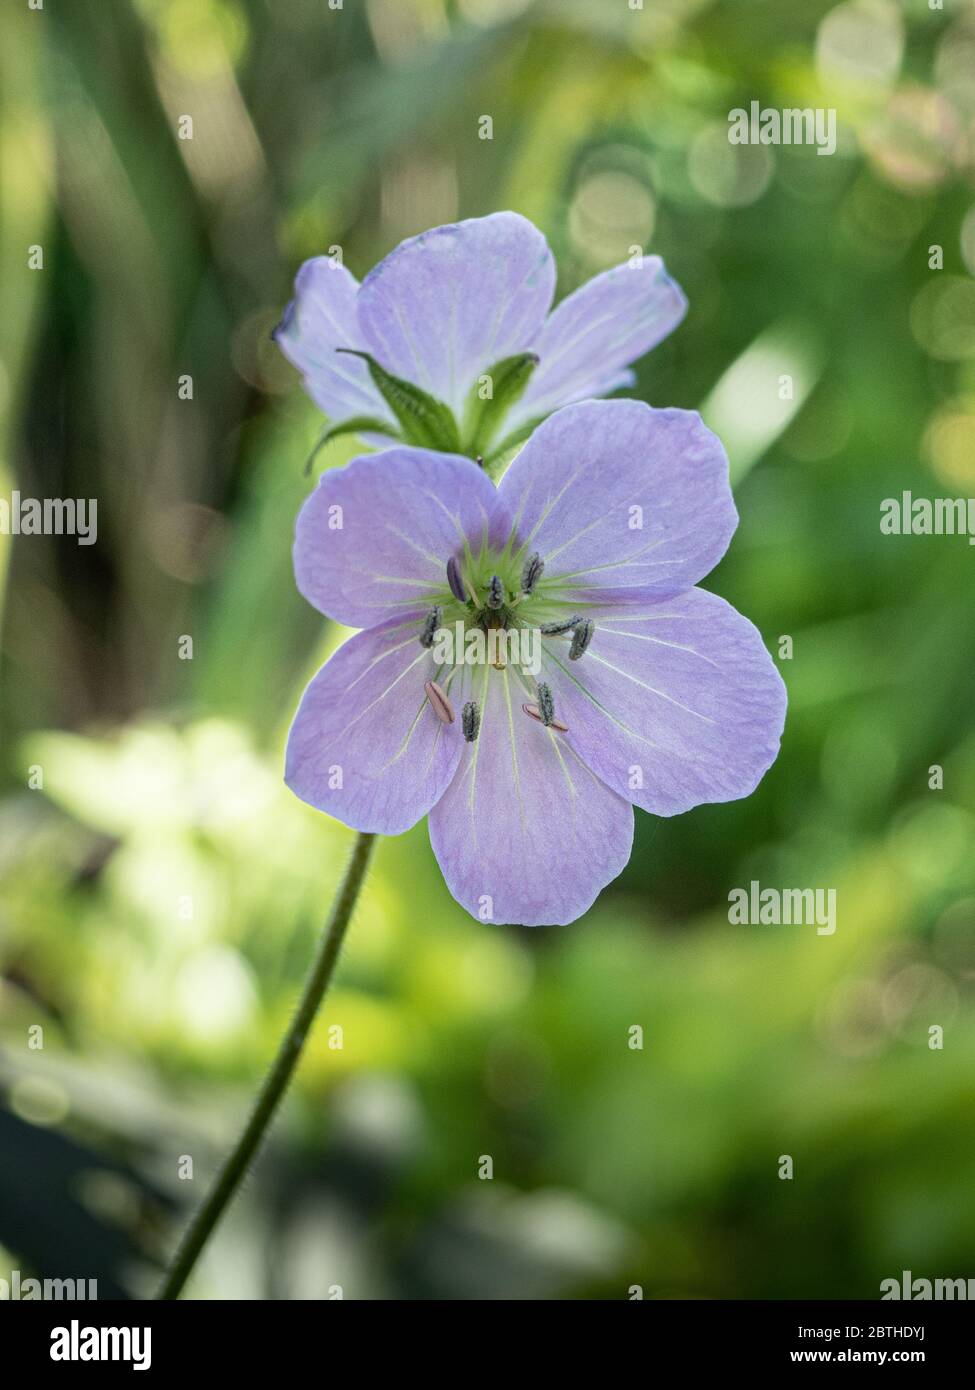 A close up of a flower head of the lilac flowered Geranium maculatum Espresso Stock Photo